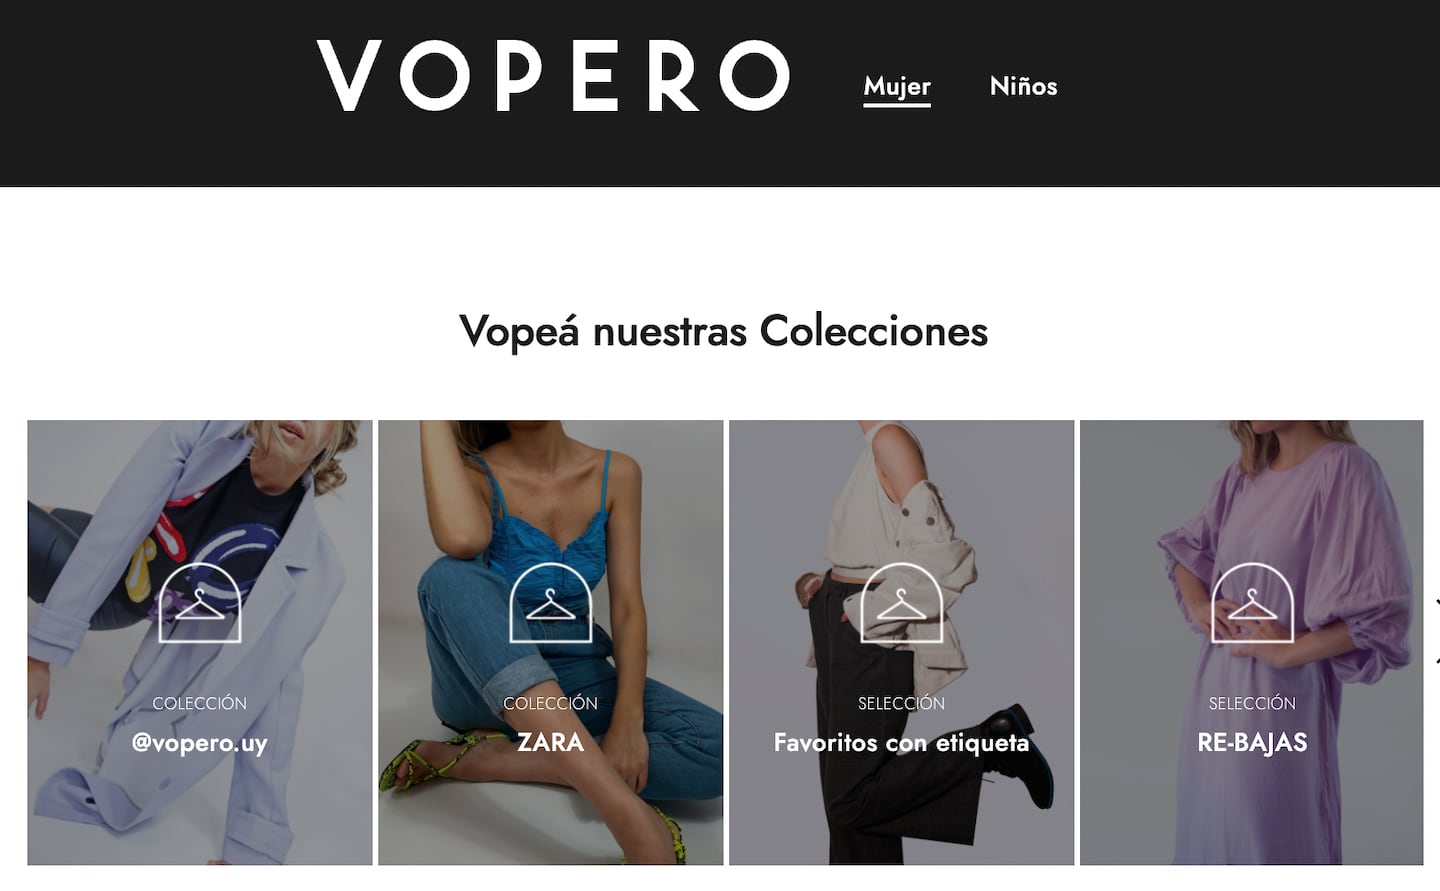 A screenshot from Vopero's Uraguay resale site. Vopero.uy